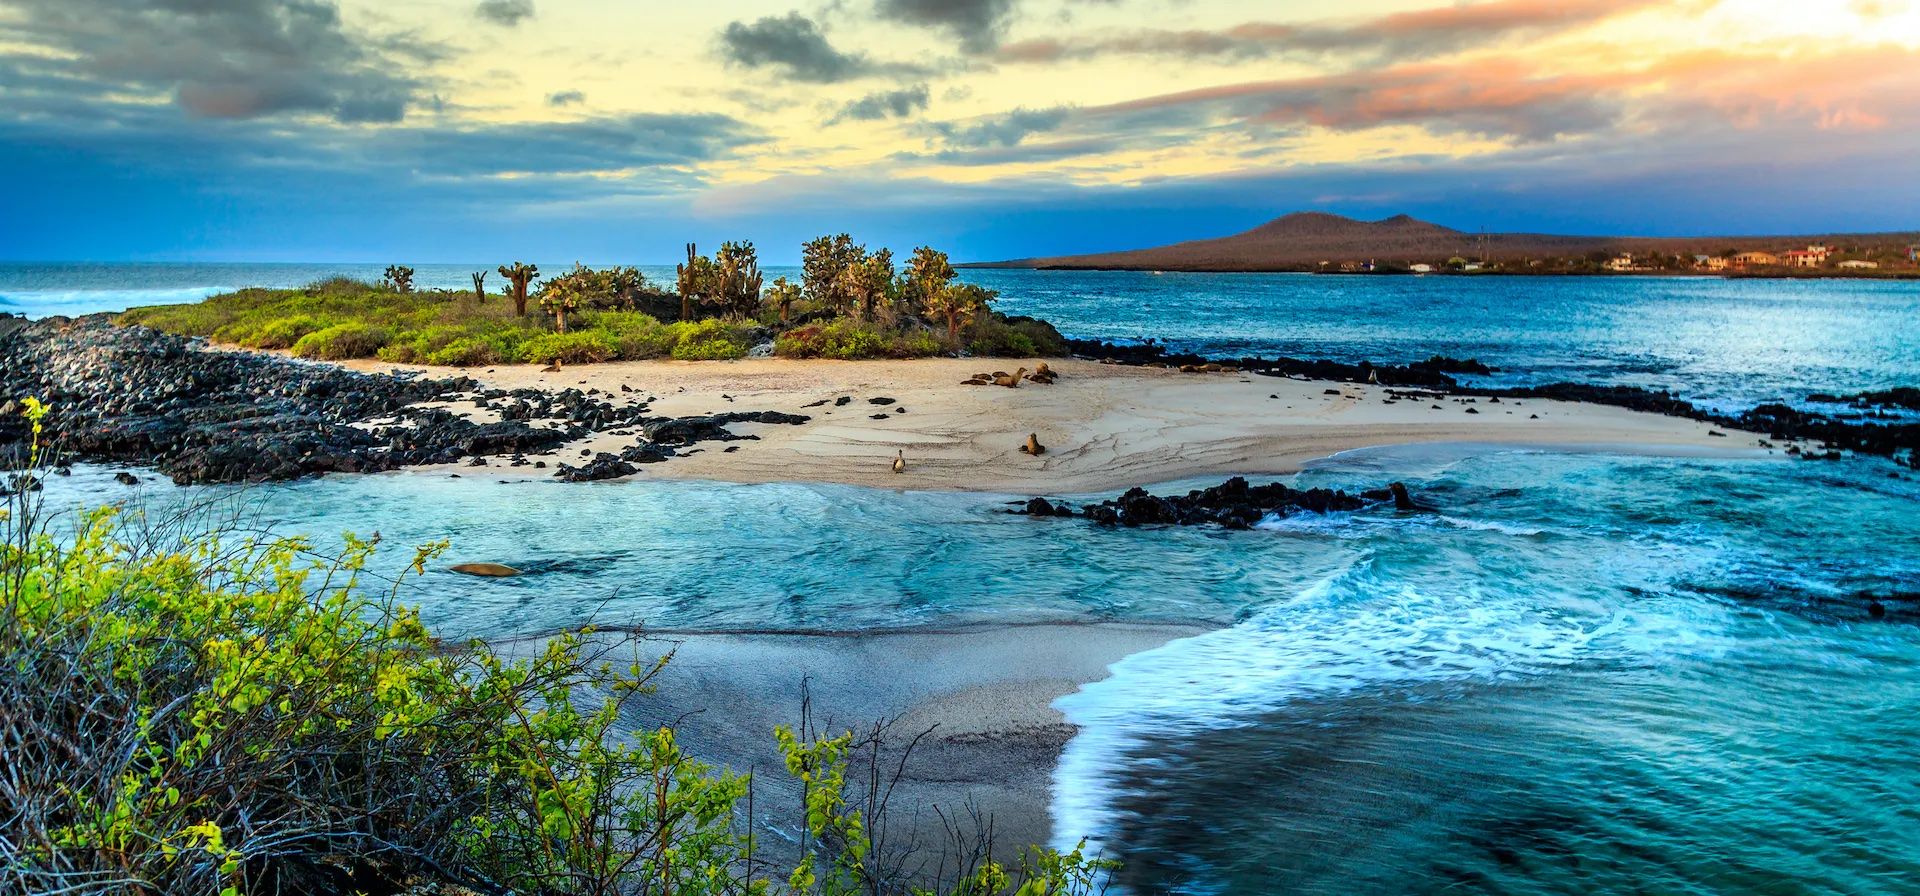 The Galapagos Islands, sunset